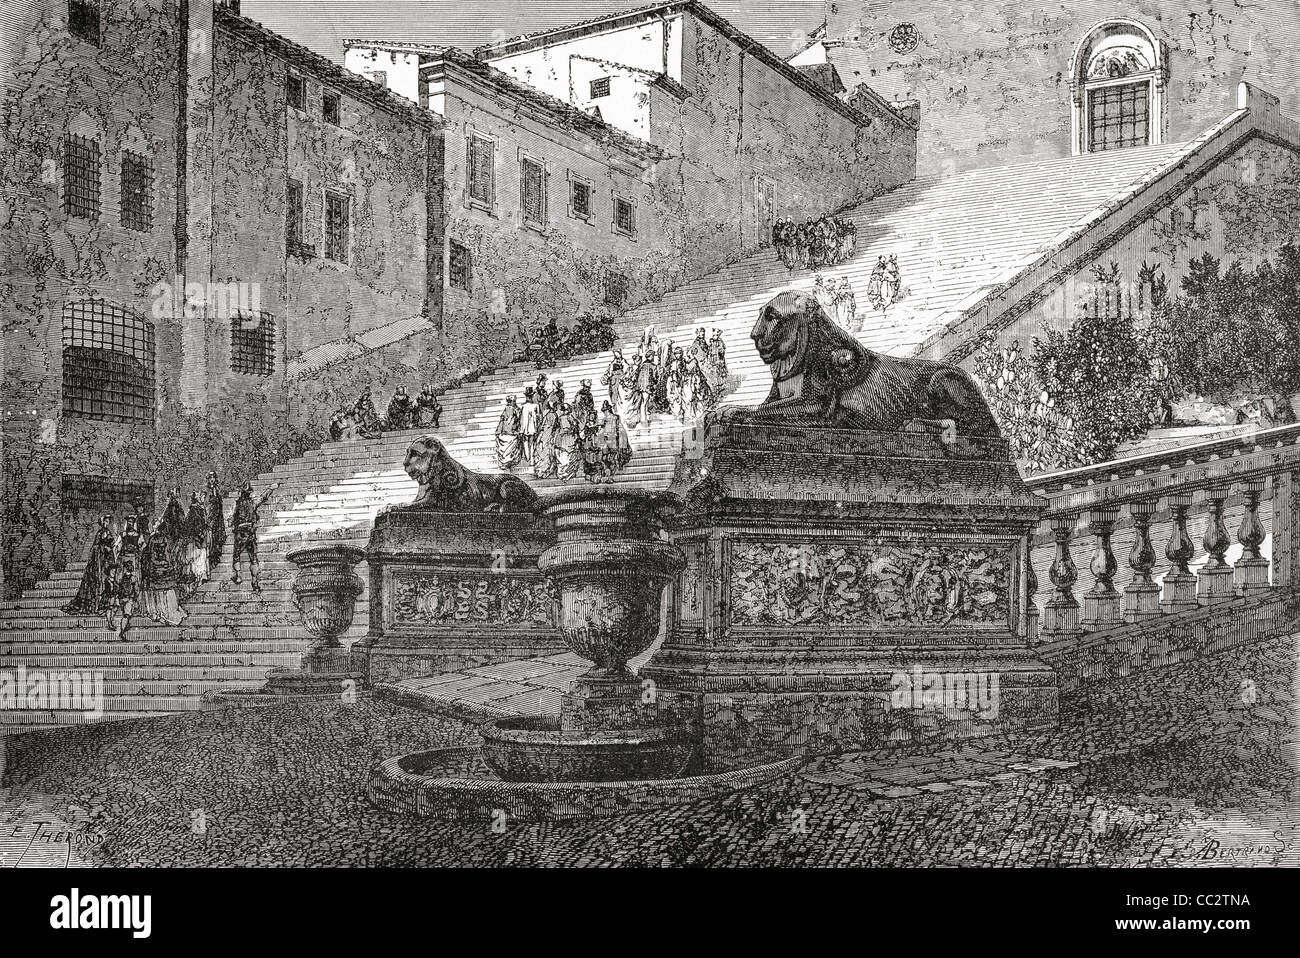 Treppe hinauf, die Basilika von Santa Maria der Altar des Himmels, Rom, Italien im späten 19. Jahrhundert. Stockfoto